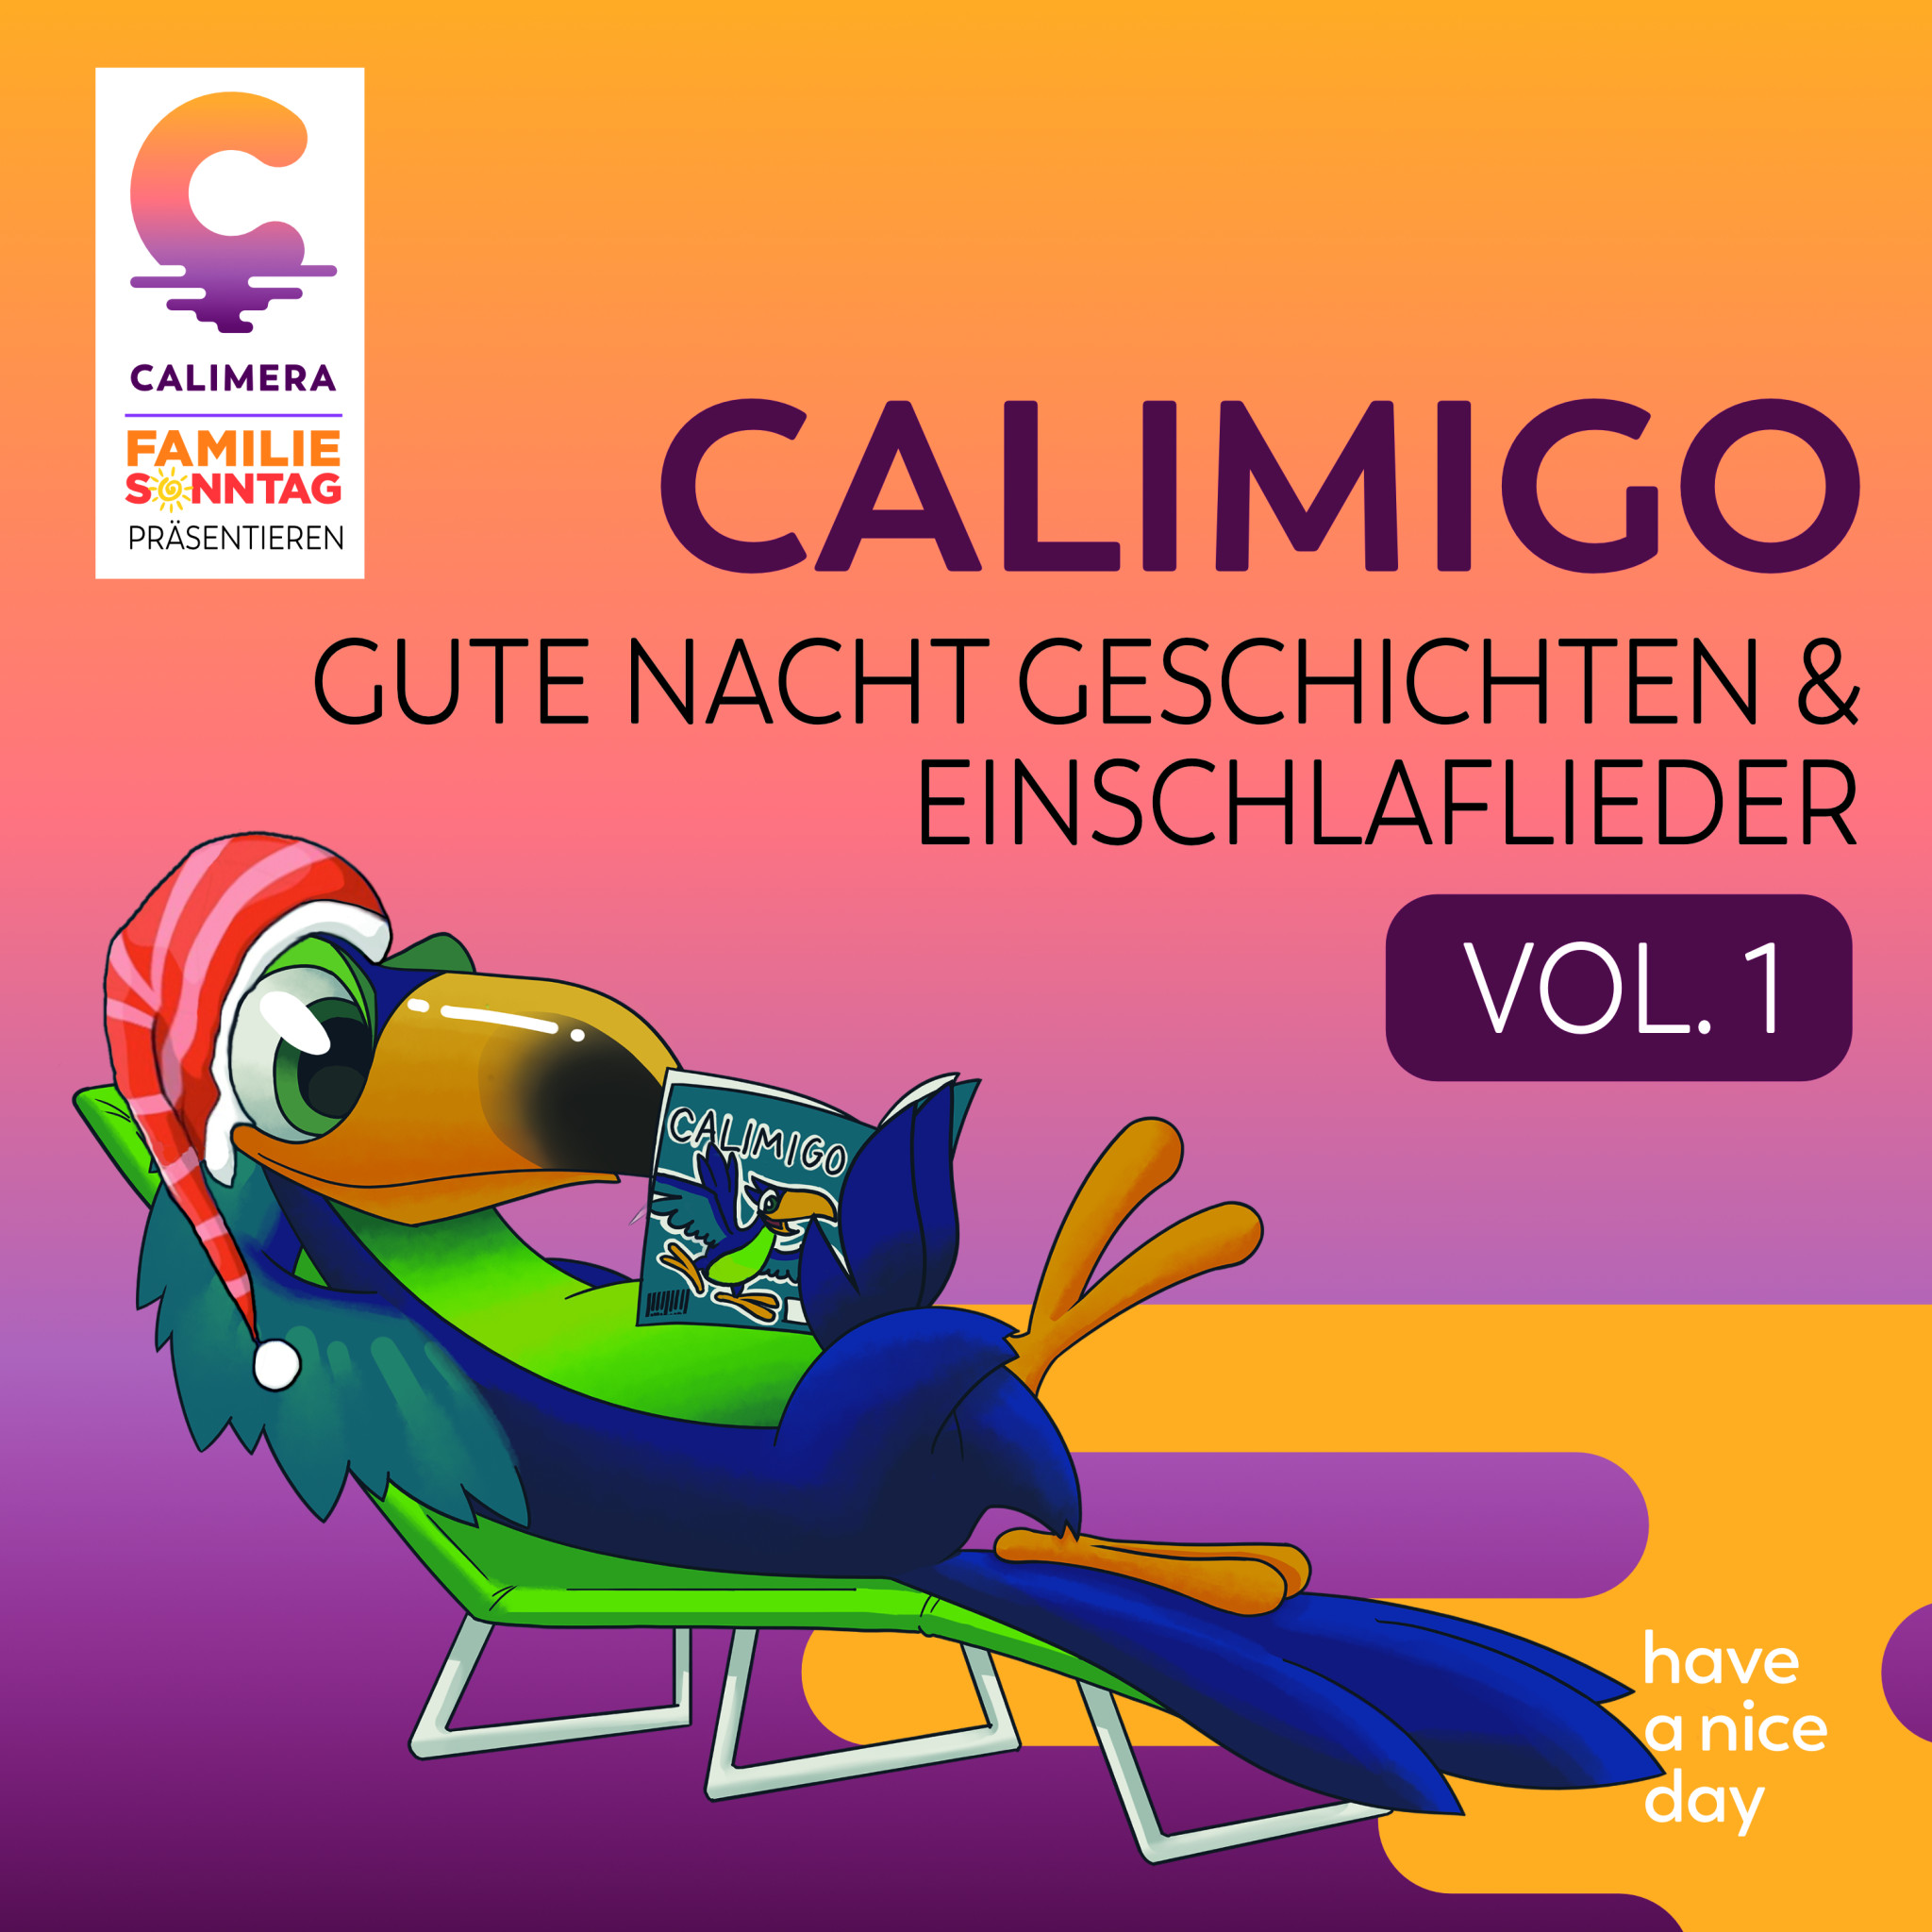 Calimigo Gute Nacht Geschichten_Einschlaflieder Vol. 1 Cover.jpg